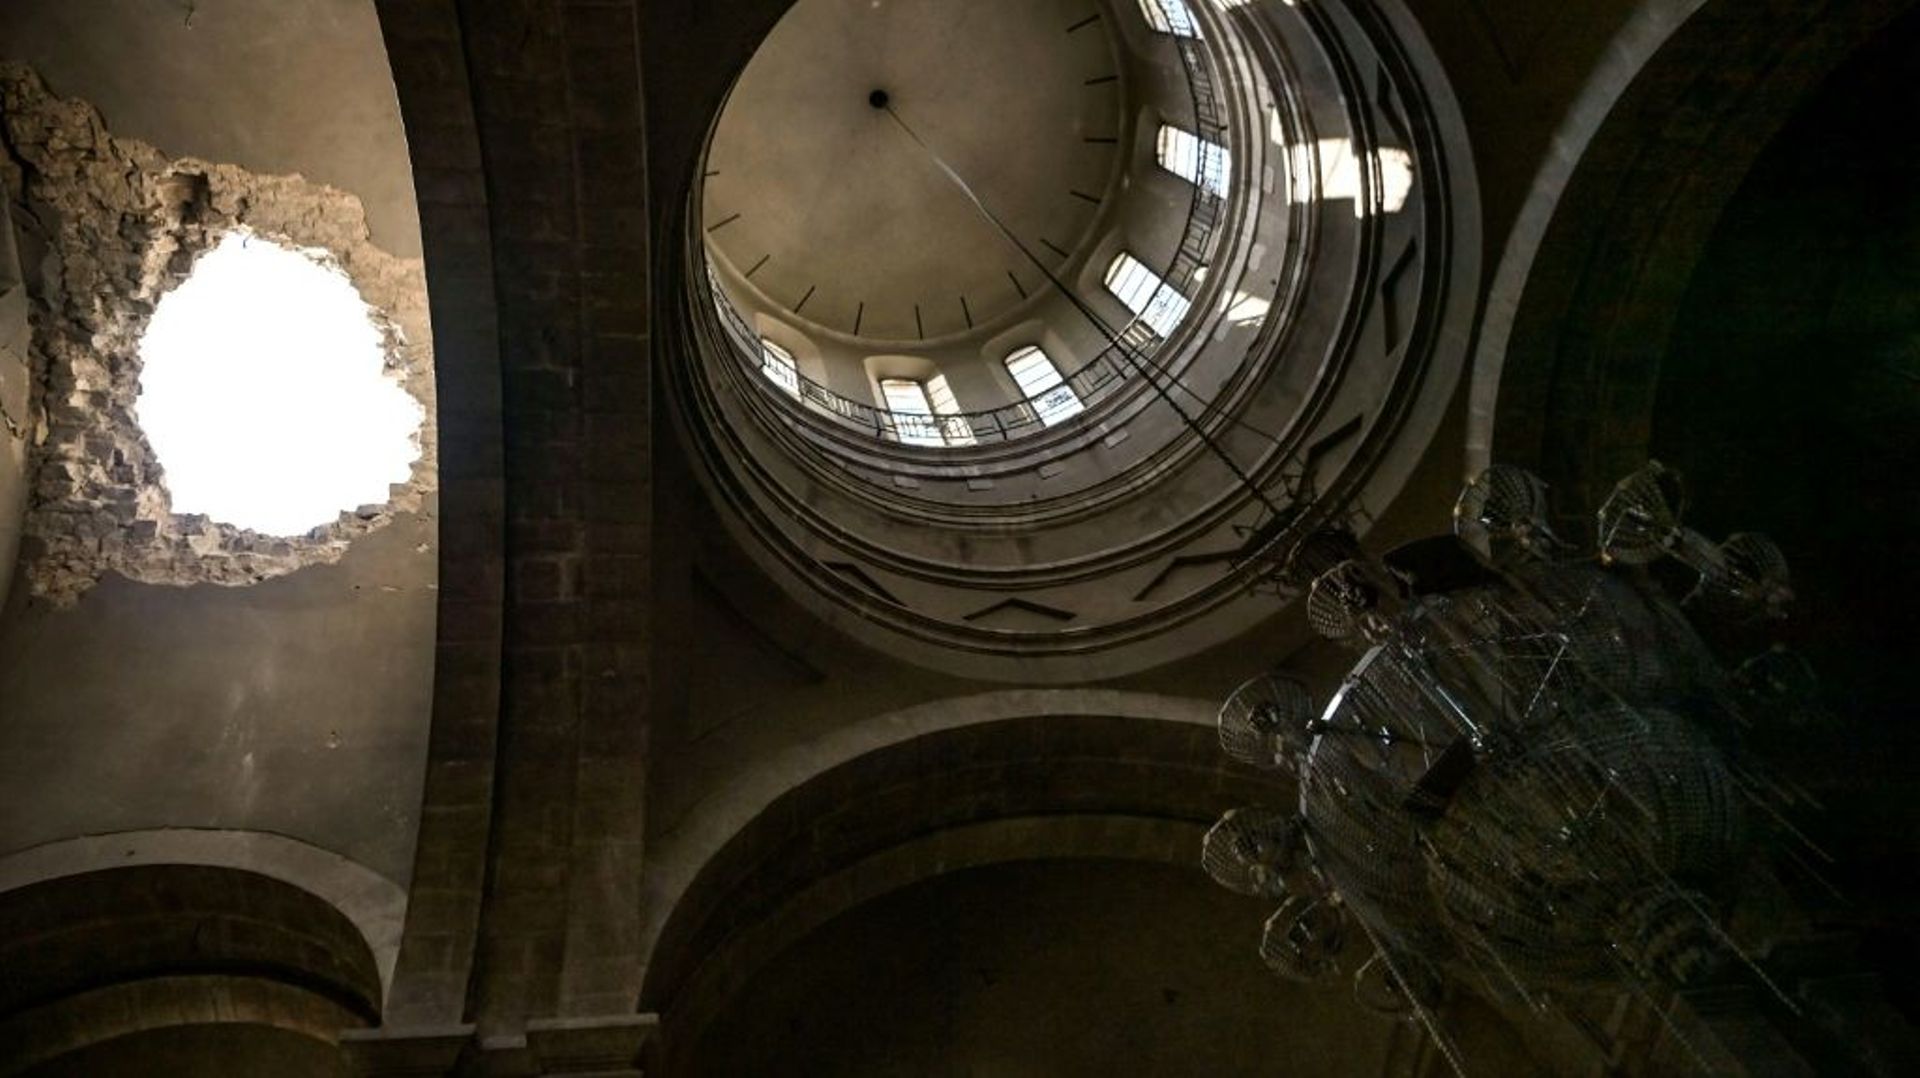 La cathédrale de Choucha, au Nagorny Karabach, atteinte par une bombe qui en a notamment percé le toit, le 8 octobre 2020